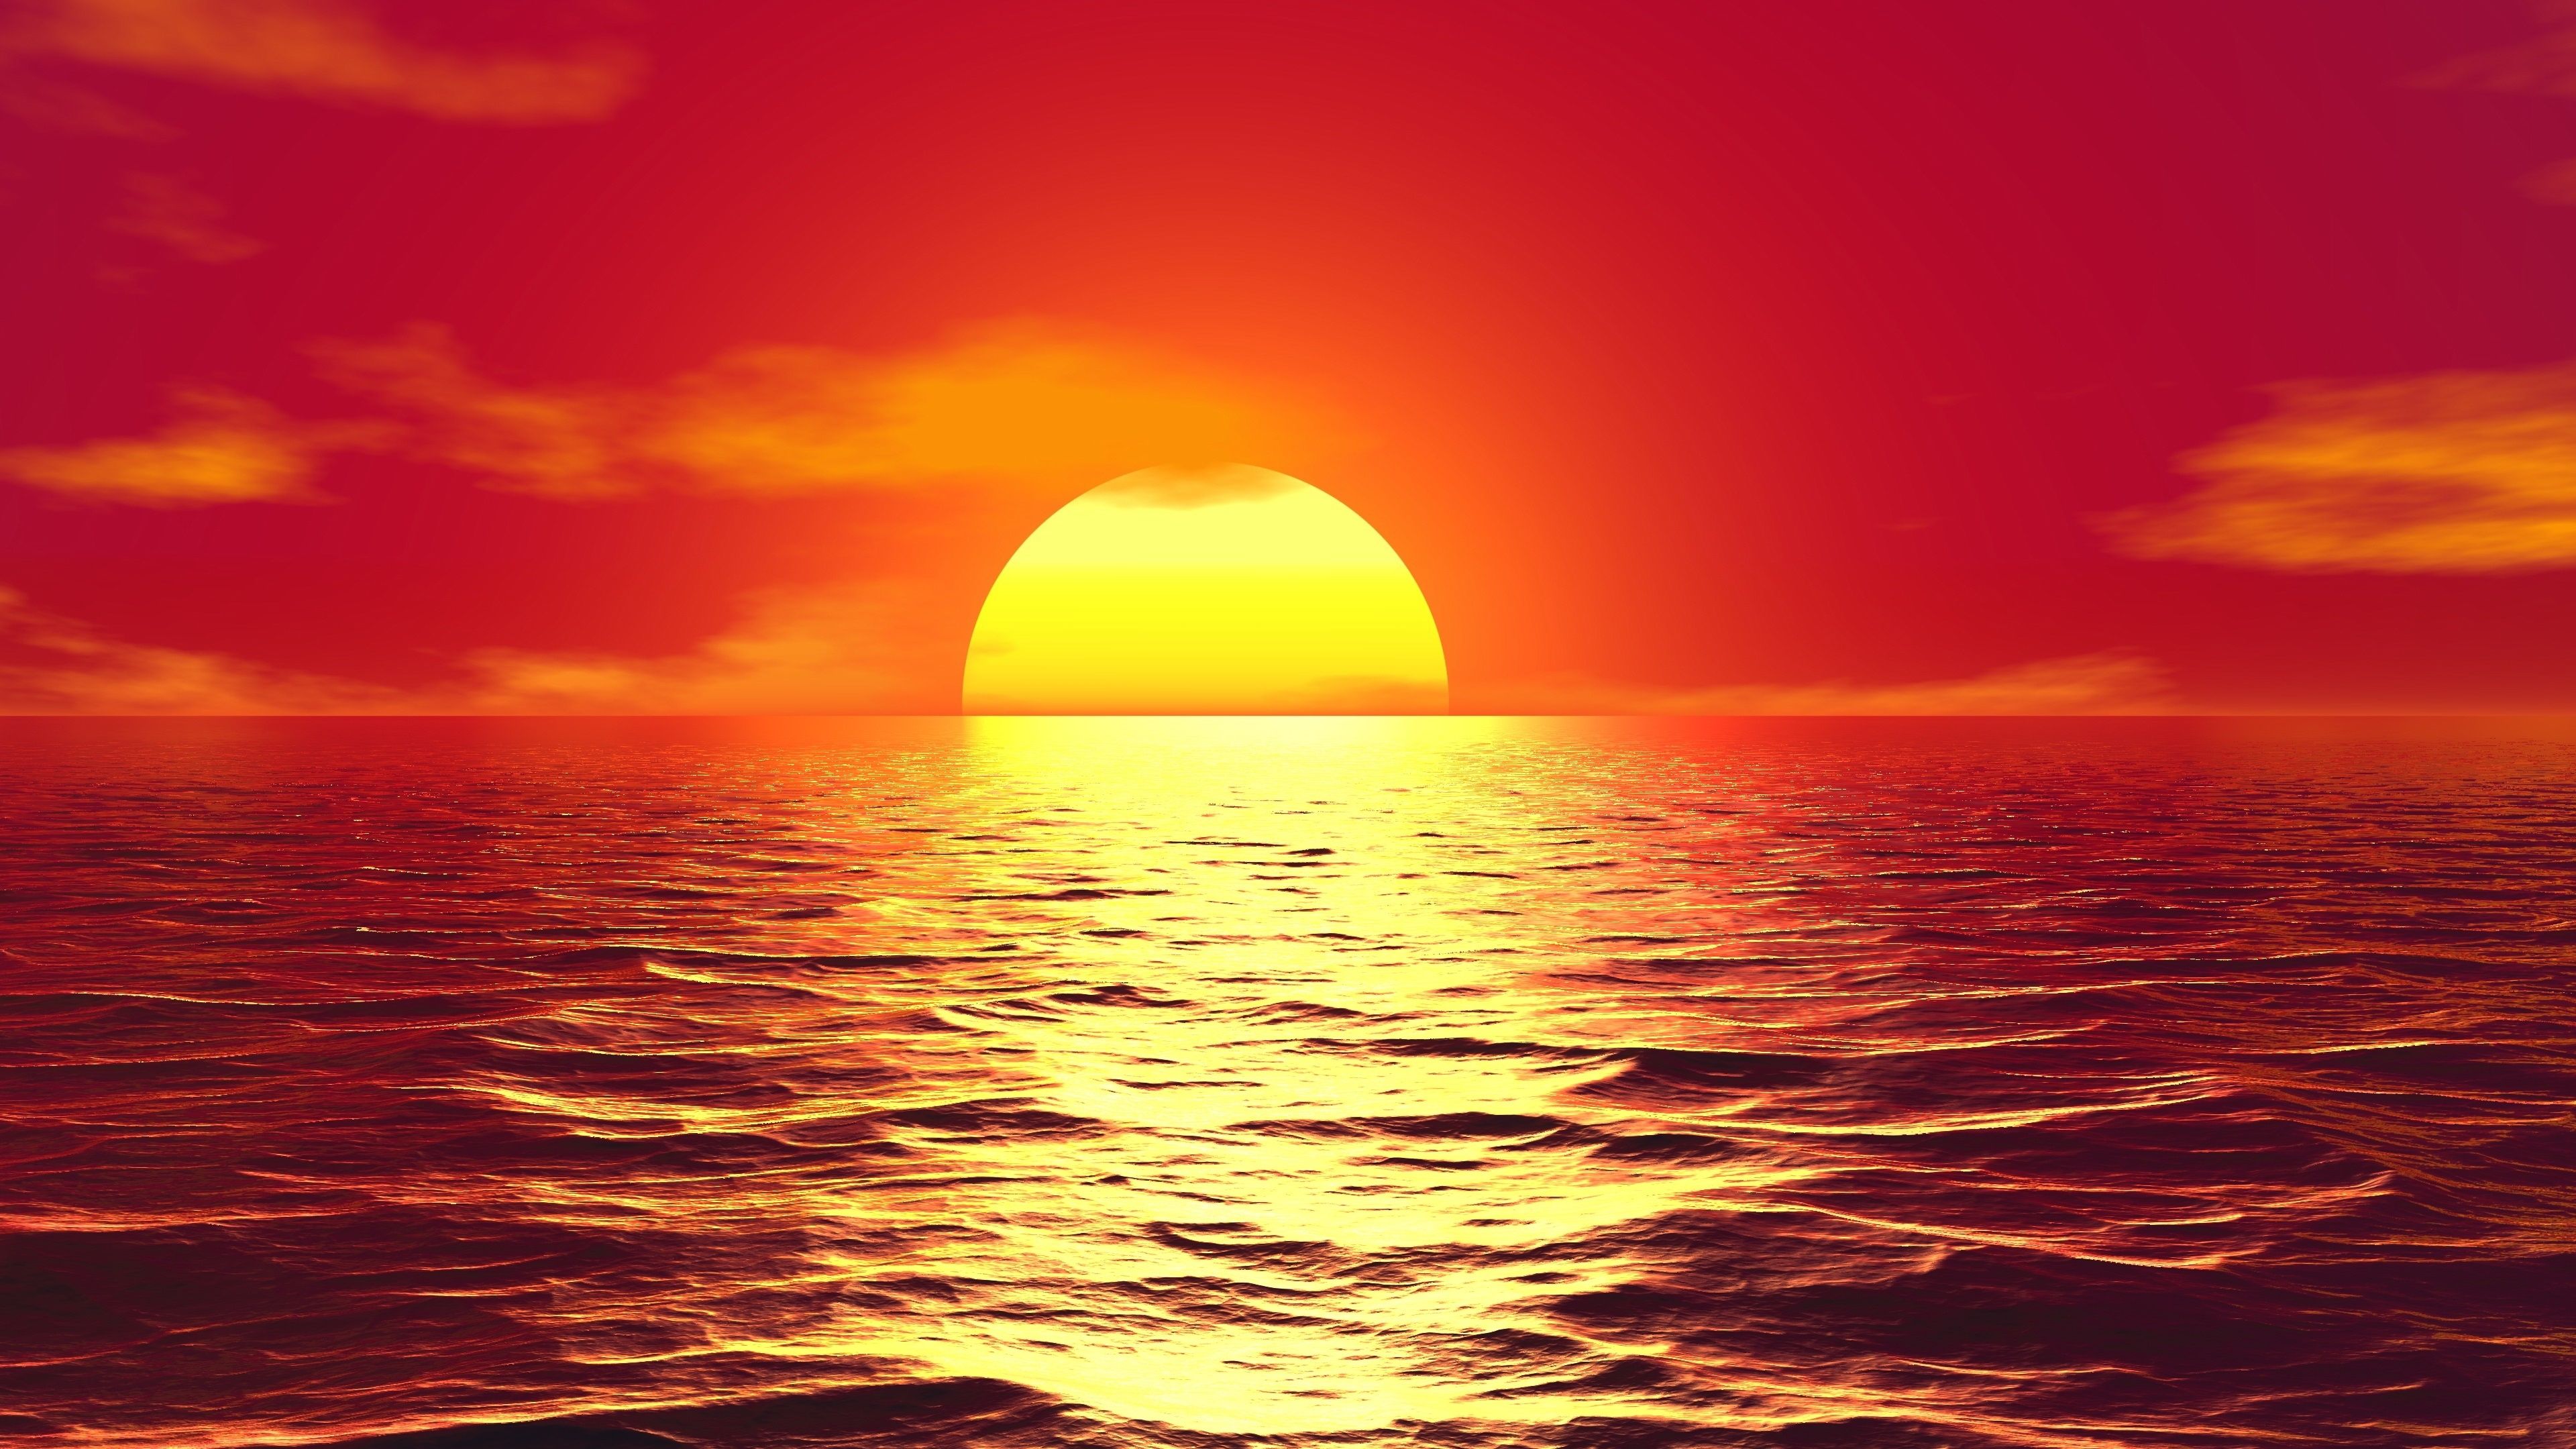 Beautiful Sunset 4k Ultra HD Wallpaper. Background Image